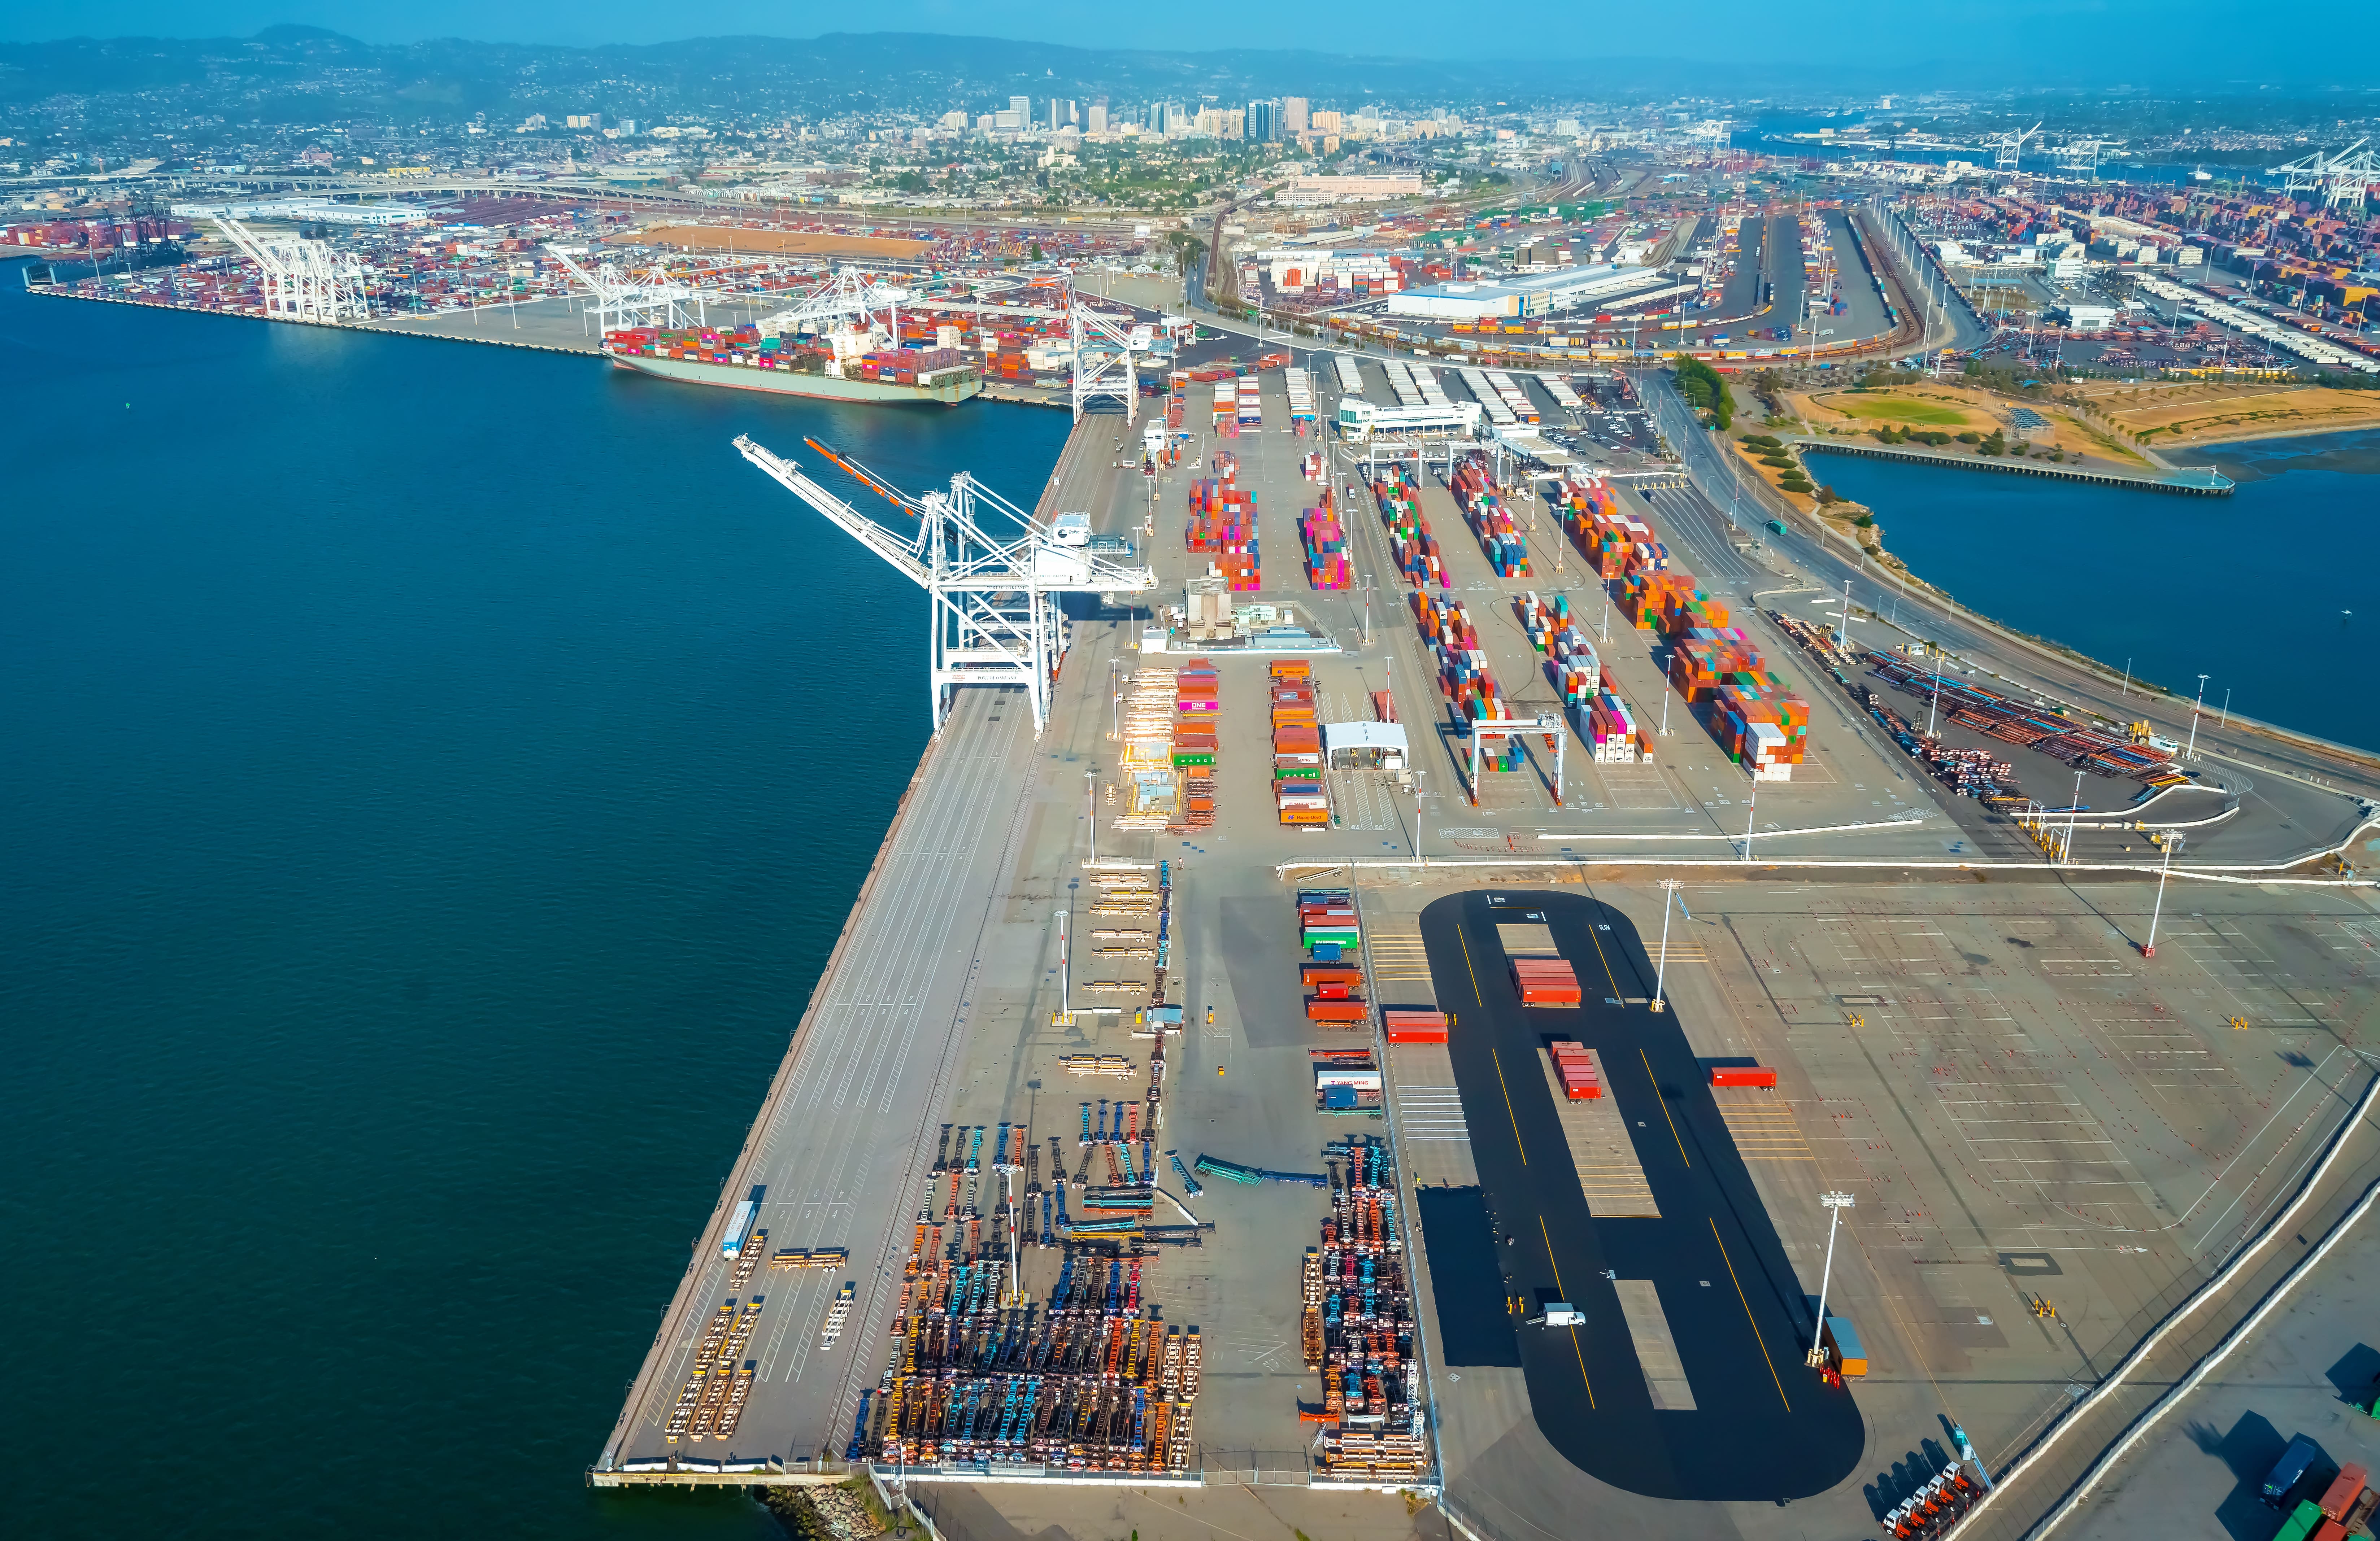 Kaliforniya konteyner limanlarından ortak veri paylaşım sistemi